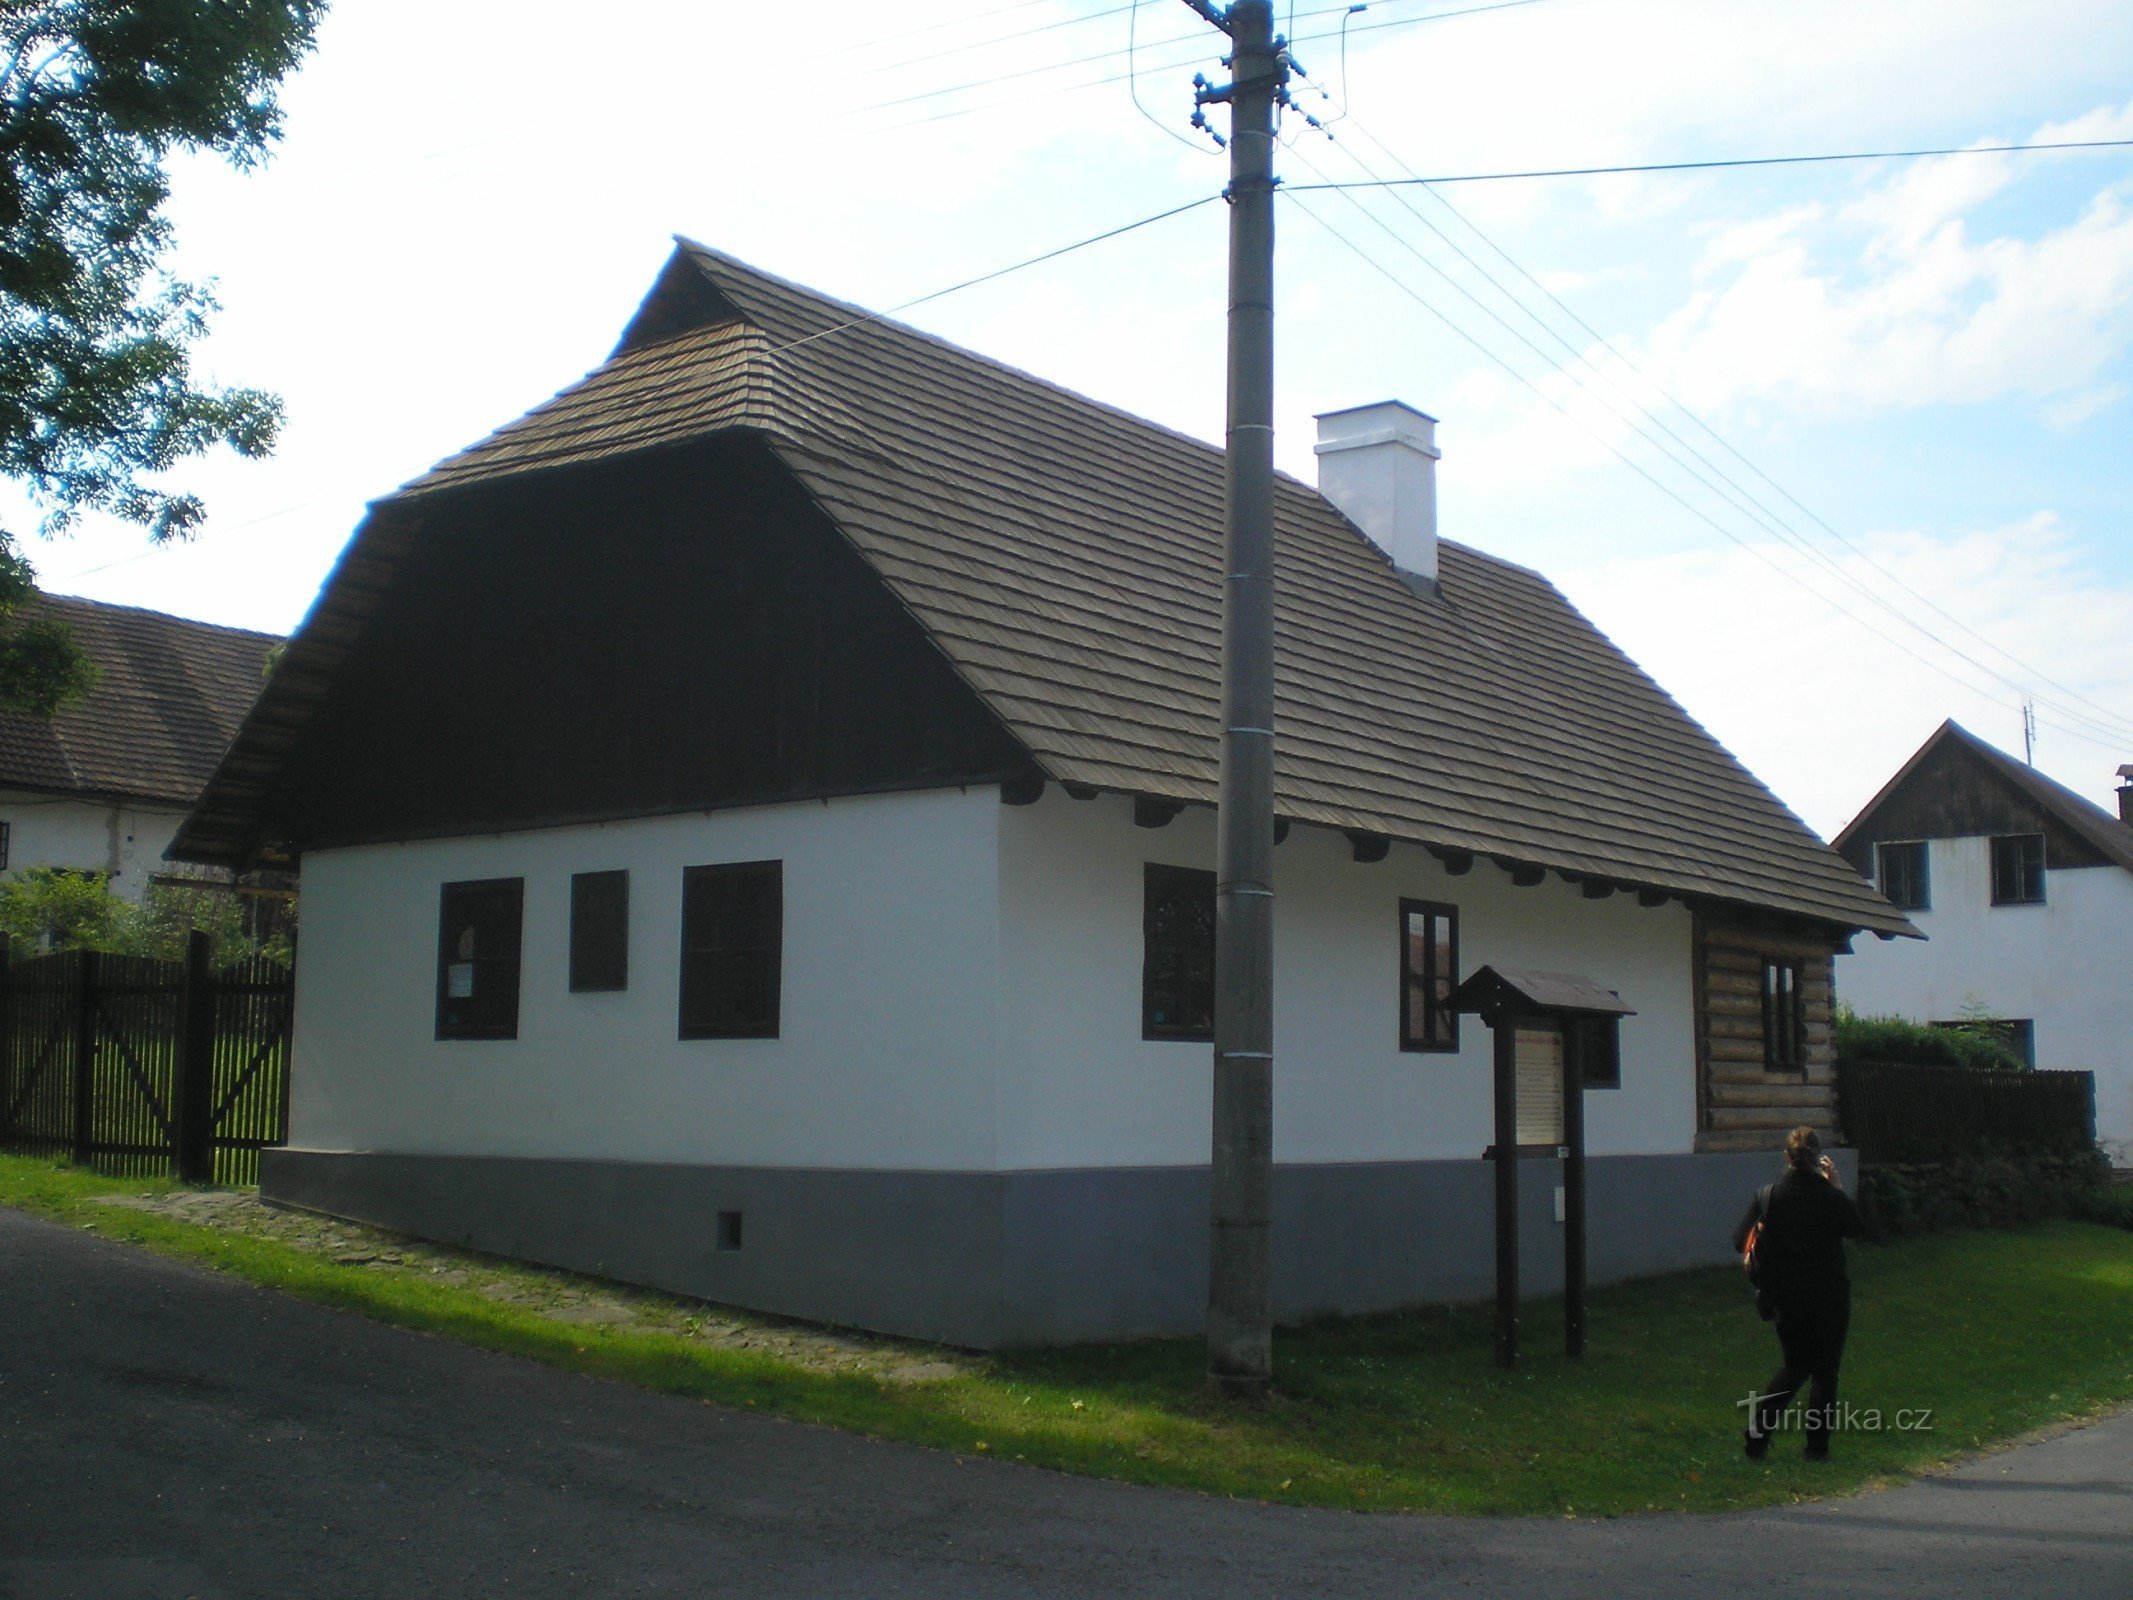 Rodno mjesto Františeka Křižíka